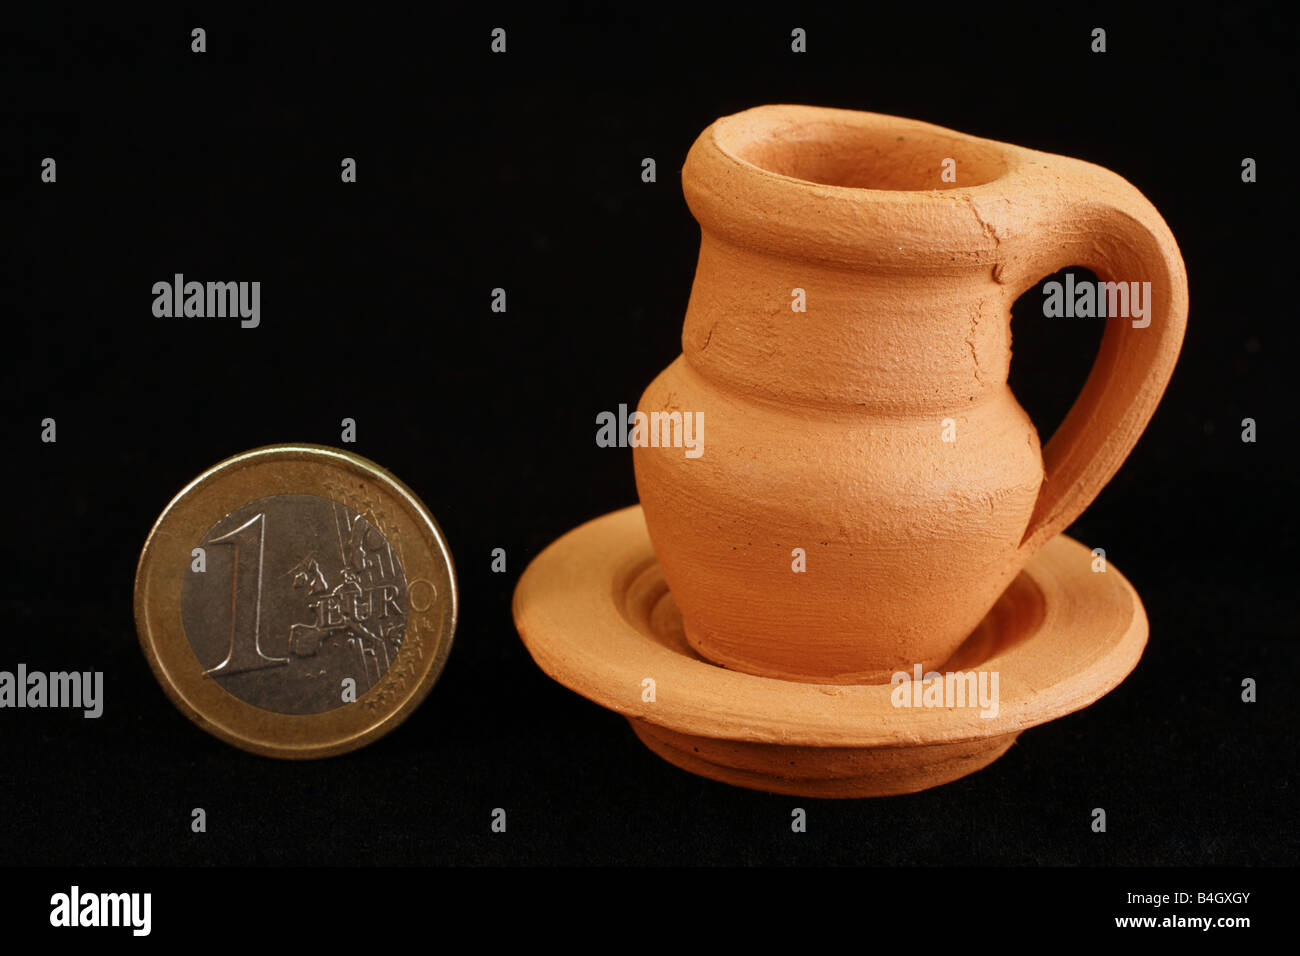 Kleine Keramik Artikel neben einer 1-Euro-Münze dargestellt. Azoren Inseln Handwerk Stockfoto